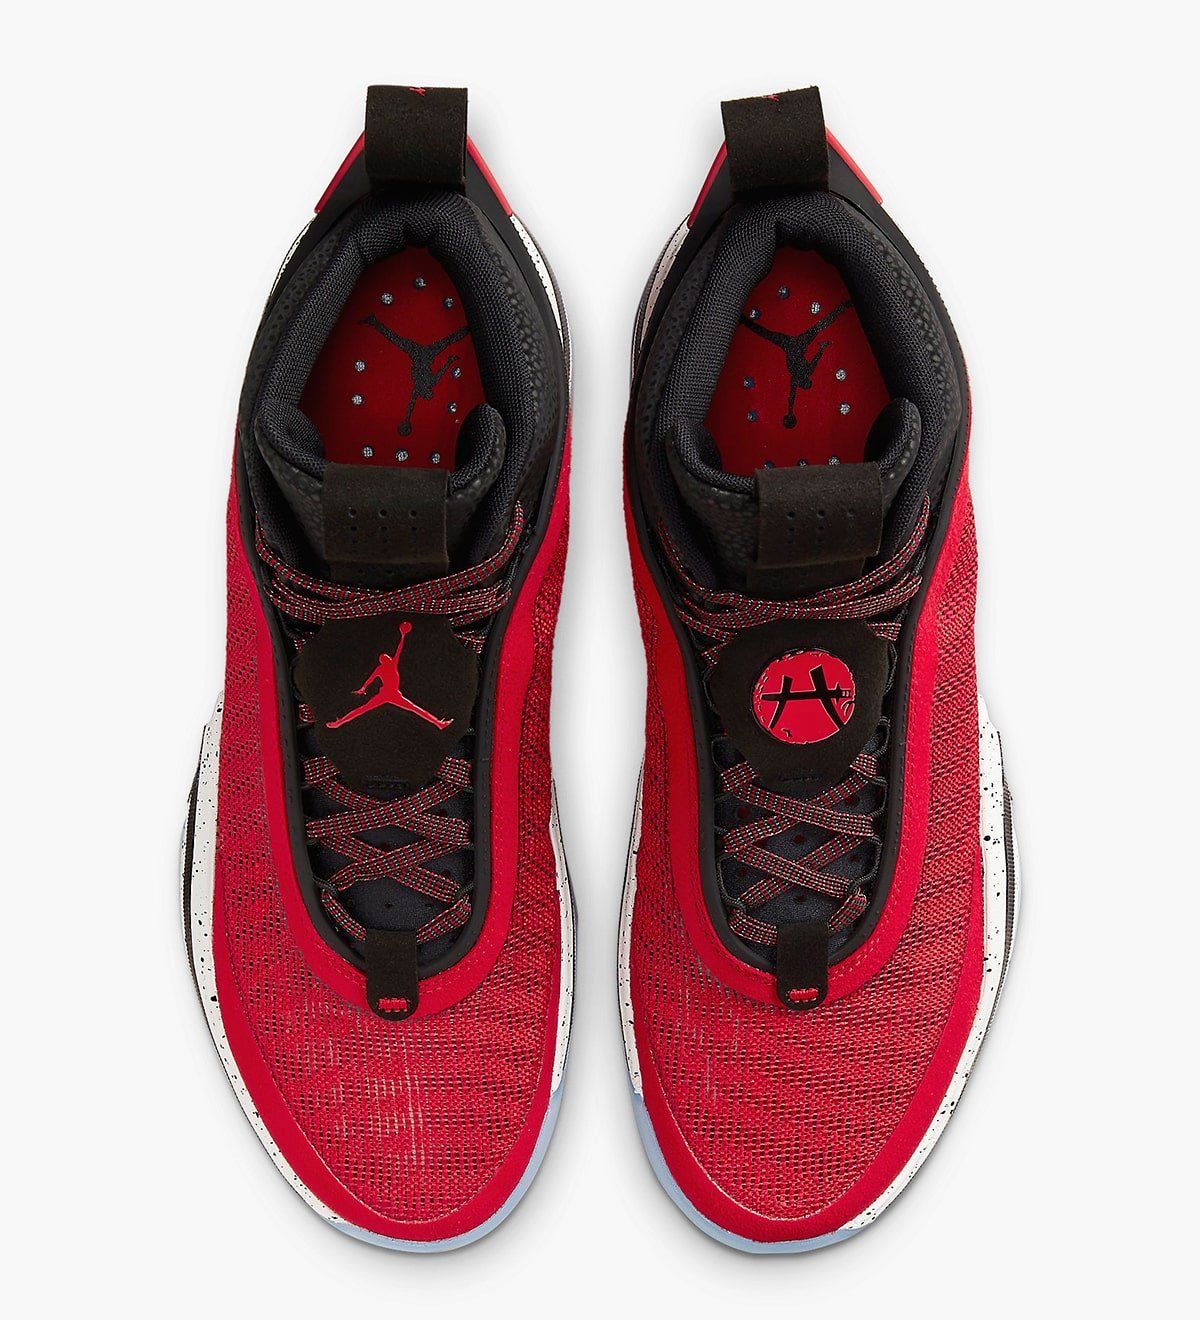 Jordan Brand Reveal Five PE Air Jordan 36 Colorways for it's Competing